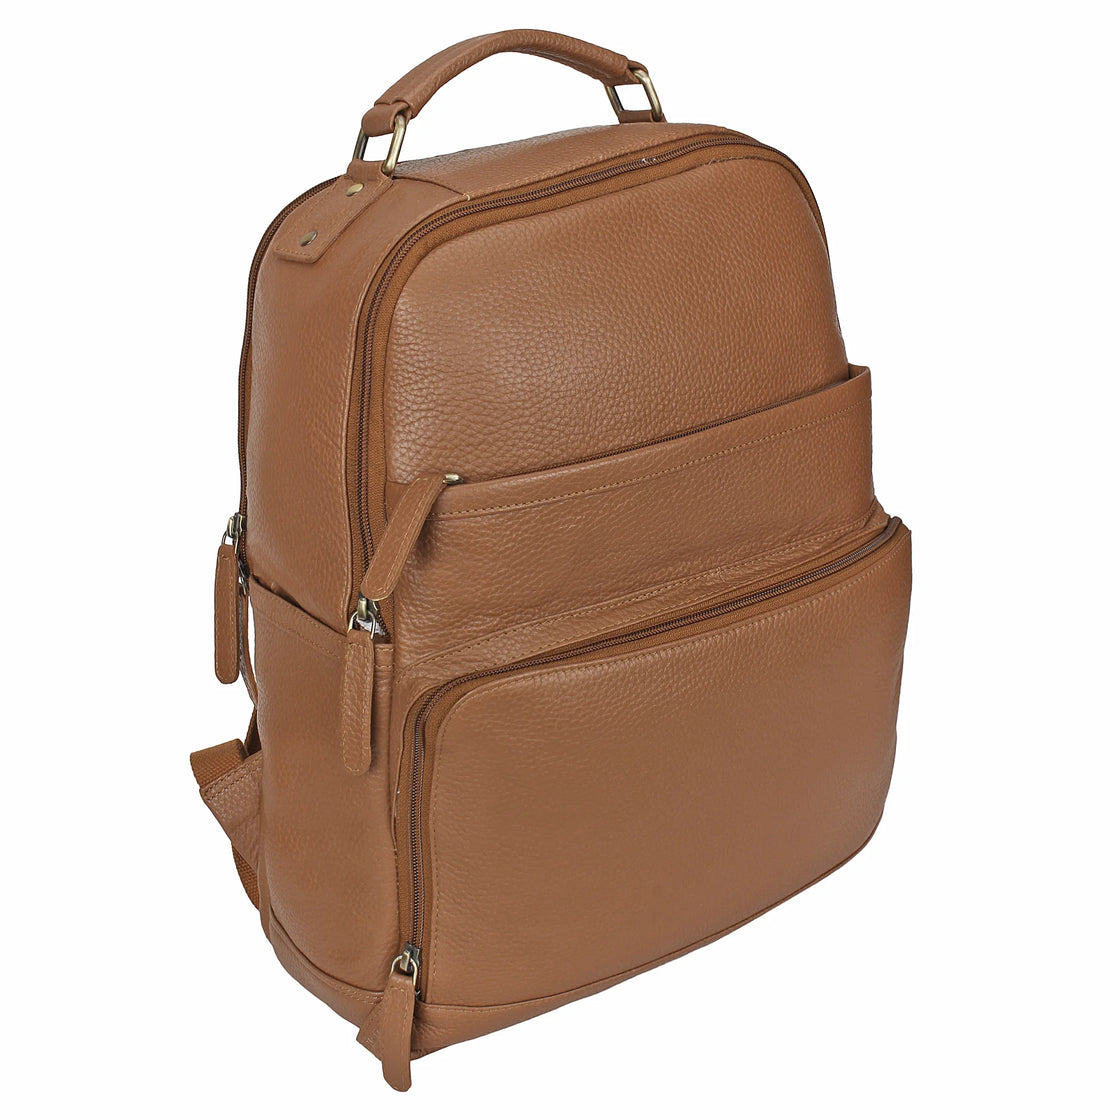 Genuine Leather Men Laptop Bag Travel Leather Backpack